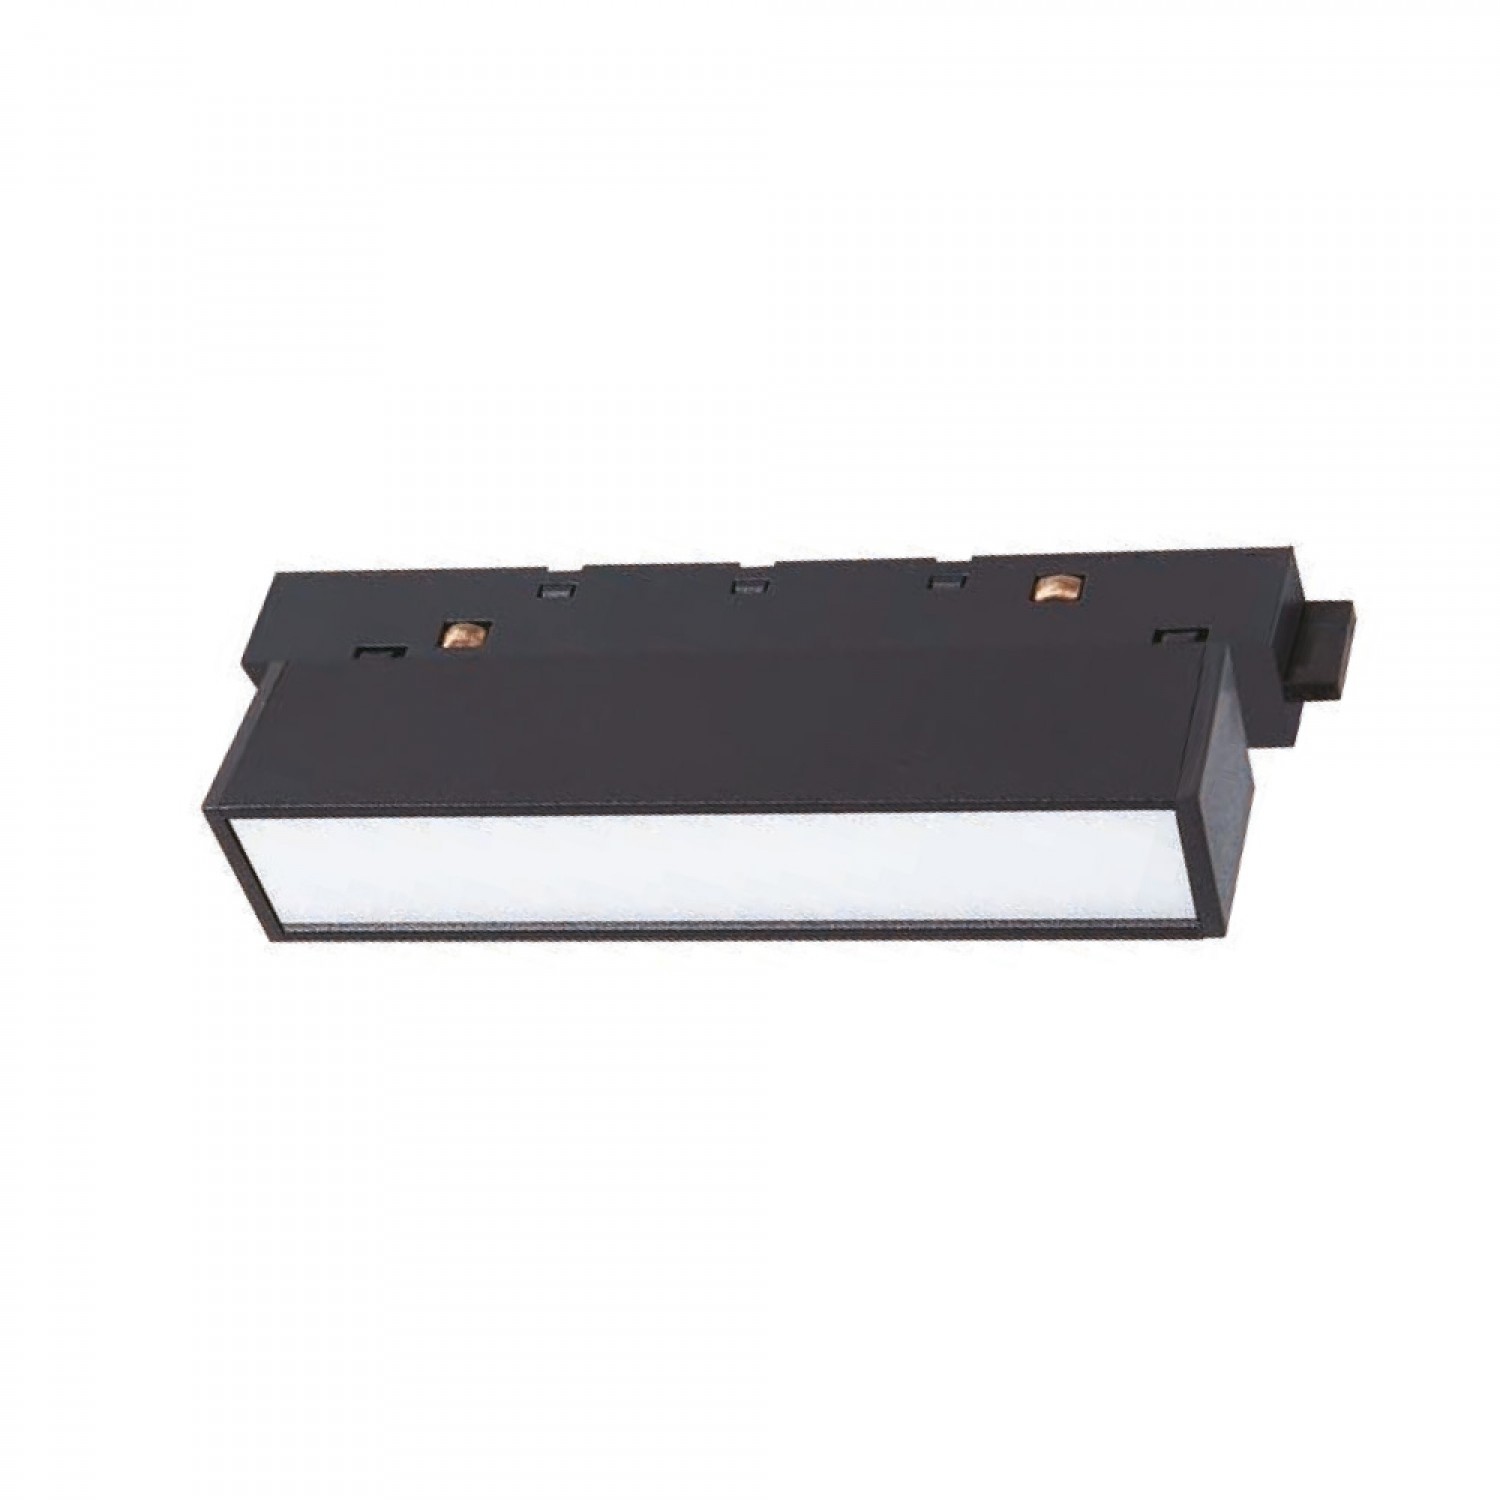 Φωτιστικό LED 12W 4000K για μαγνητική ράγα σε μαύρη απόχρωση D:30cmX4,3cm (T01702-BL)